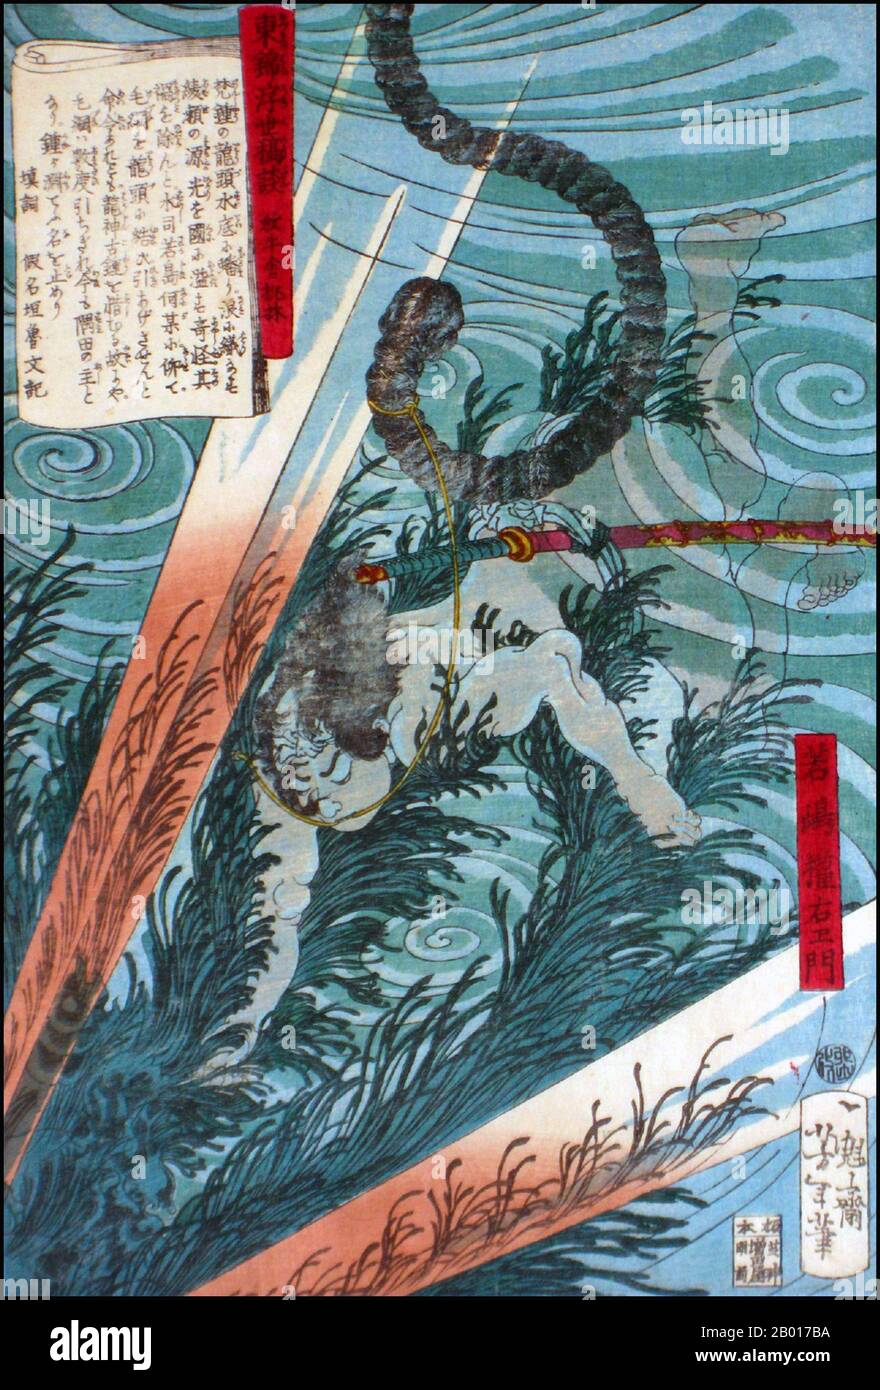 Giappone: 'Wakashima Gonemon nuoto subacqueo'. Ukiyo-e woodblock print di Tsukioka Yoshitoshi (1839 - 9 giugno 1892), c.. 1867-1868. Tsukioka Yoshitoshi, anche chiamato Taiso Yoshitoshi, era un artista giapponese. È ampiamente riconosciuto come l'ultimo grande maestro di Ukiyo-e, un tipo di stampa giapponese a blocchi di legno. È inoltre considerato uno dei più grandi innovatori della forma. La sua carriera ha abbracciato due epoche – gli ultimi anni del Giappone feudale, e i primi anni del Giappone moderno dopo la Restaurazione Meiji. Foto Stock